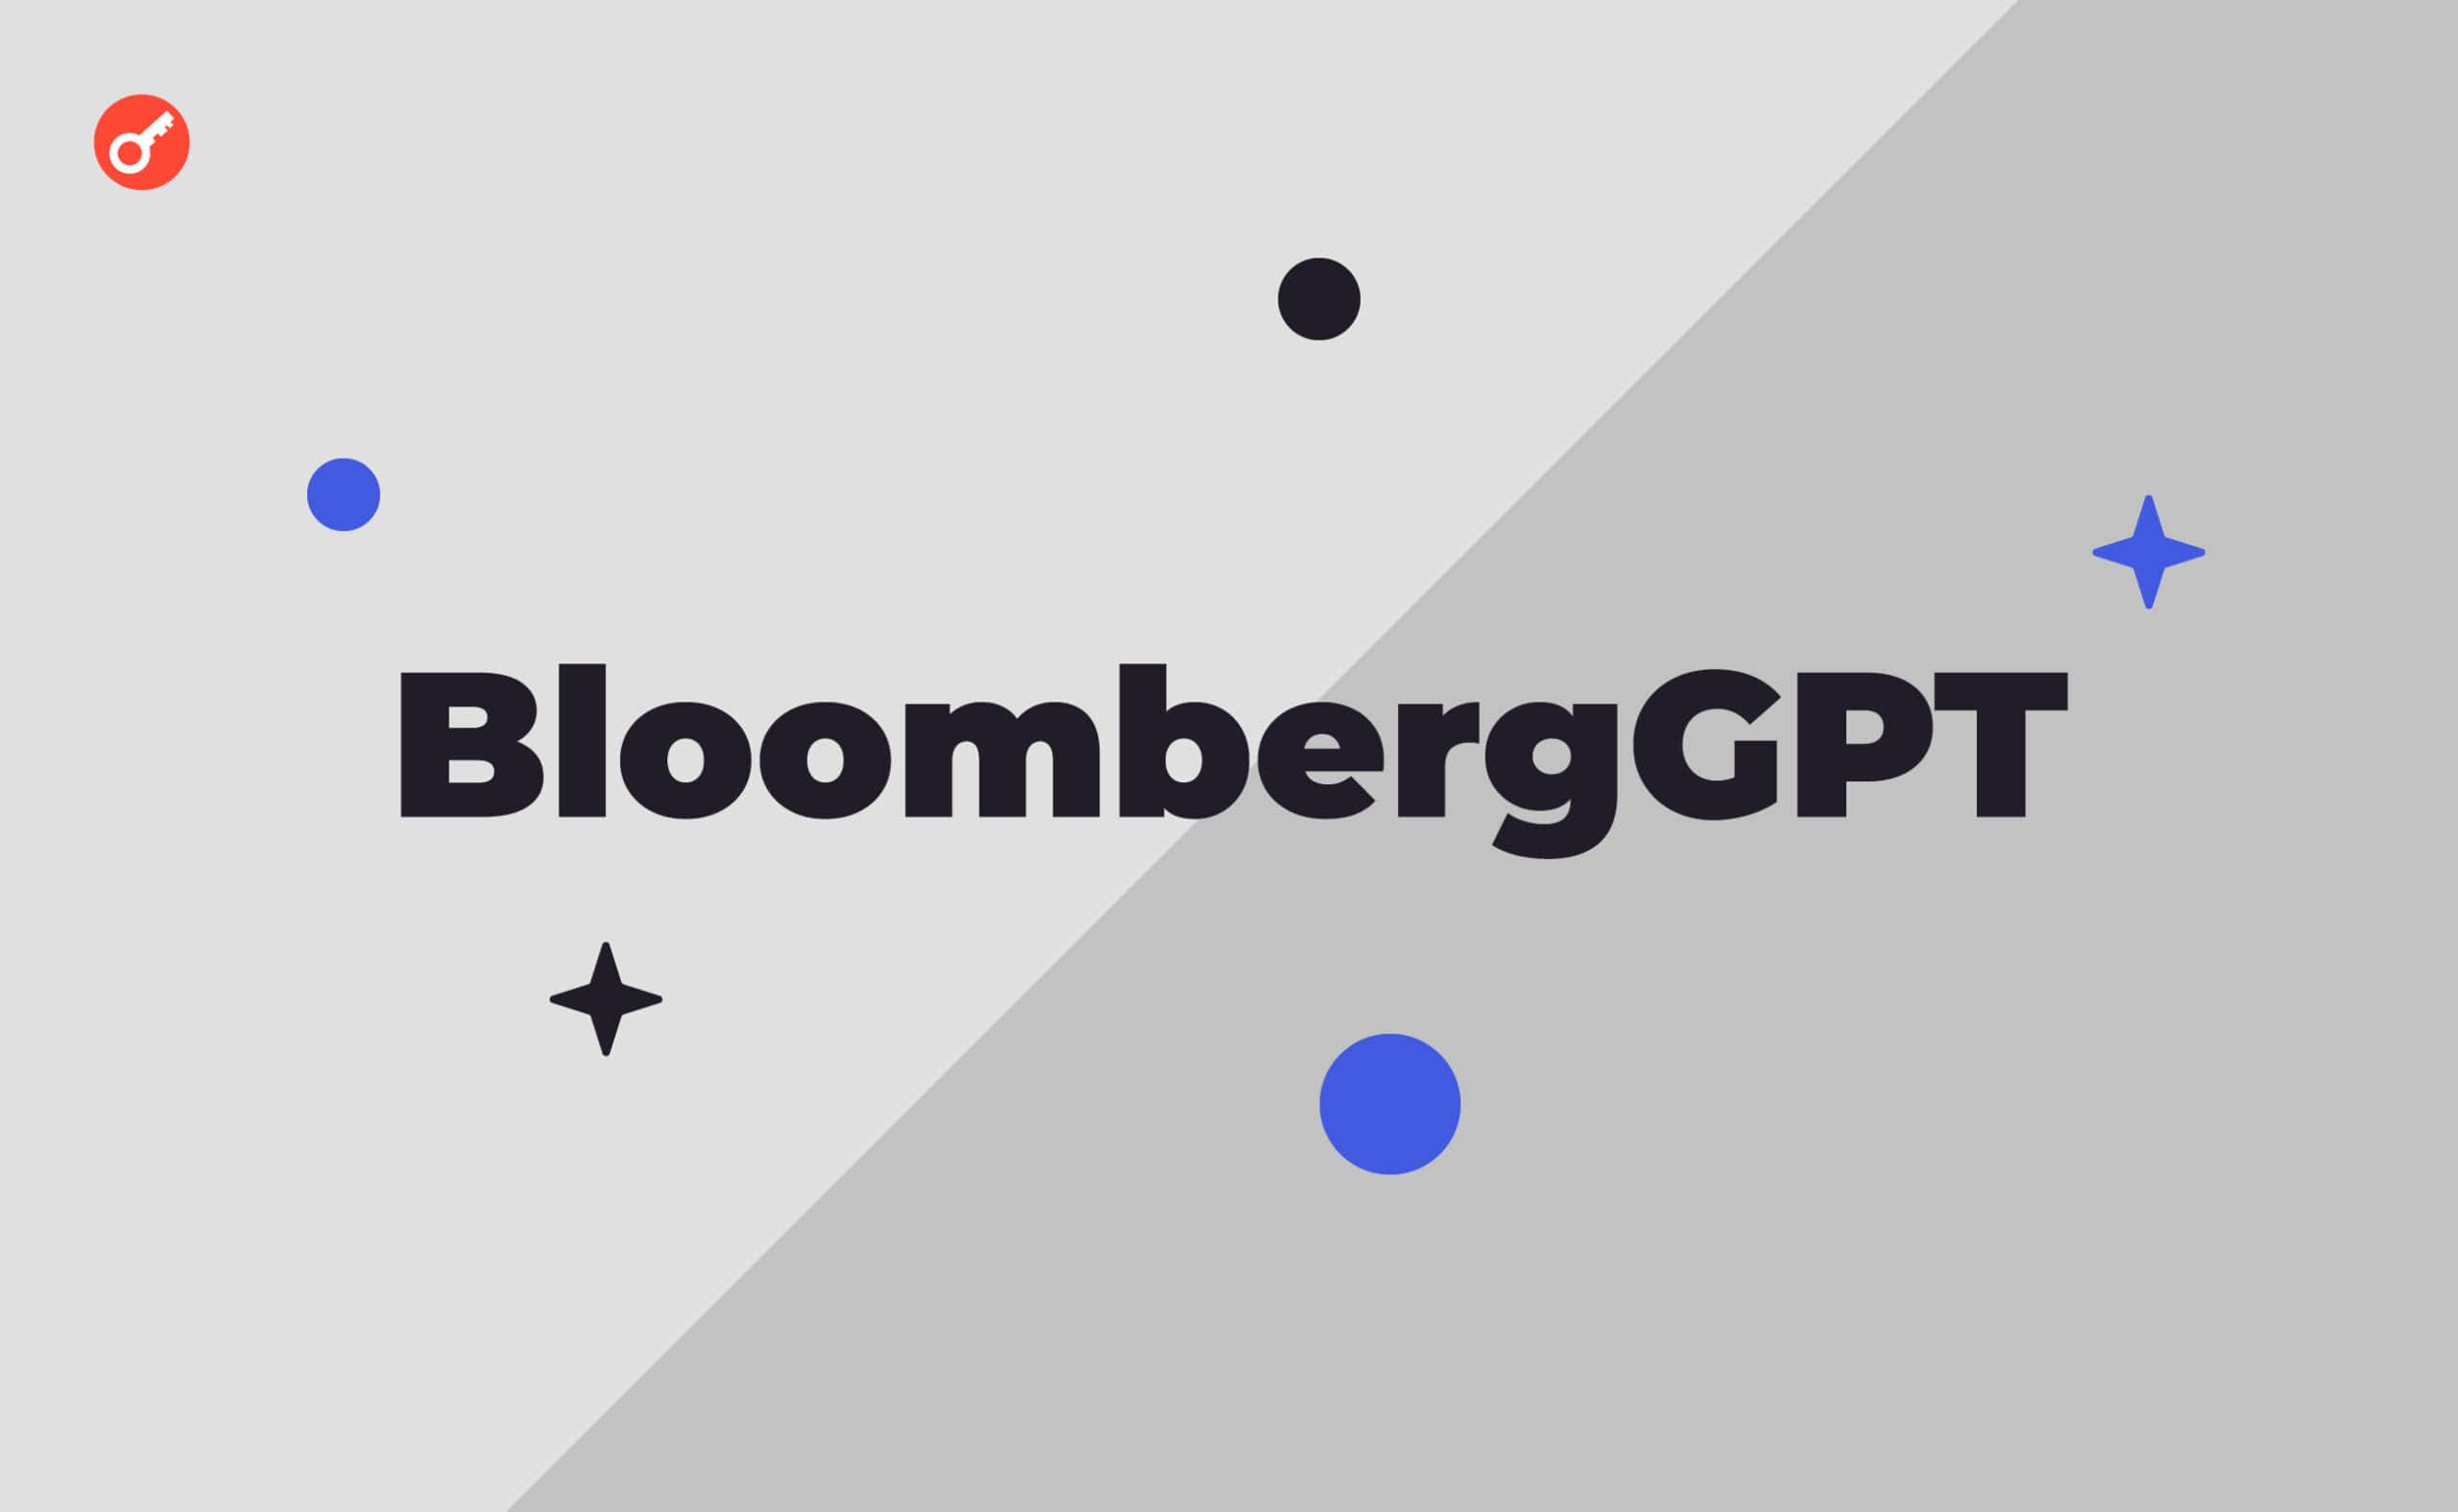 Bloomberg презентовал нейросеть BloombergGPT. Заглавный коллаж новости.